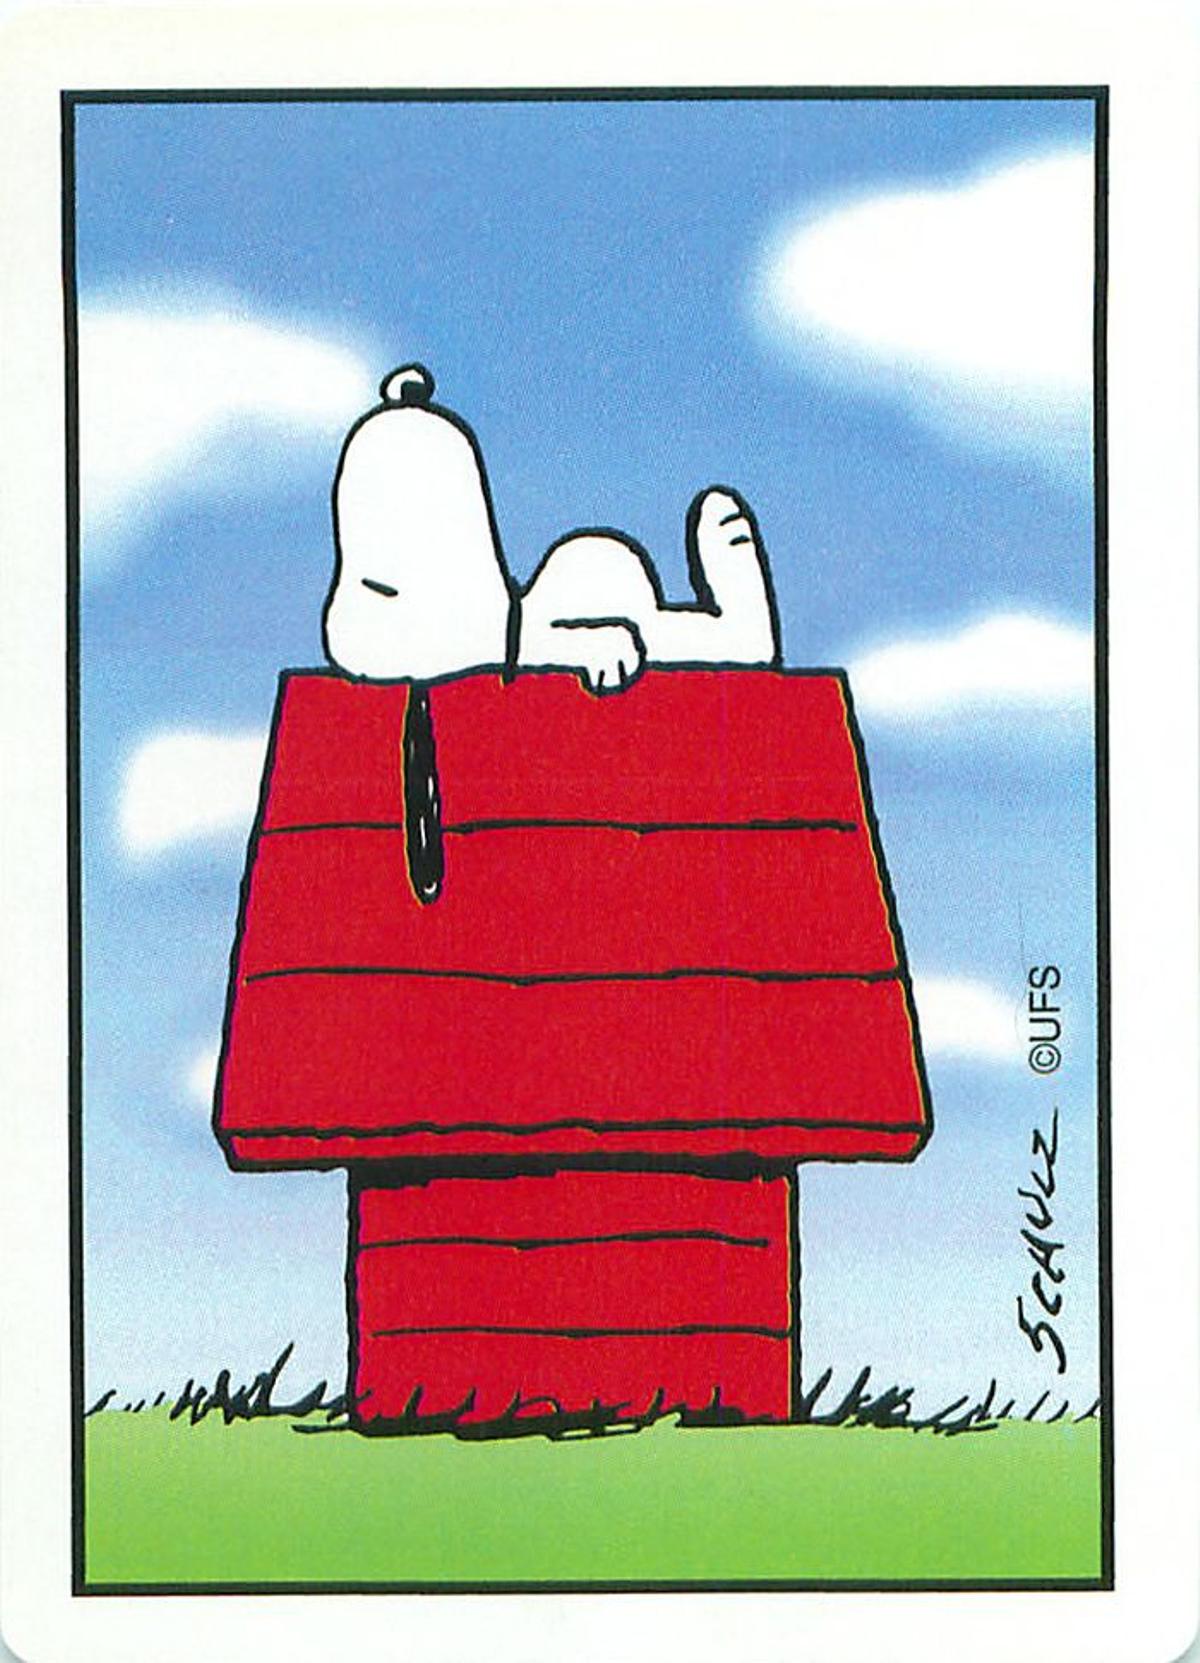 Los 65 años de Snoopy